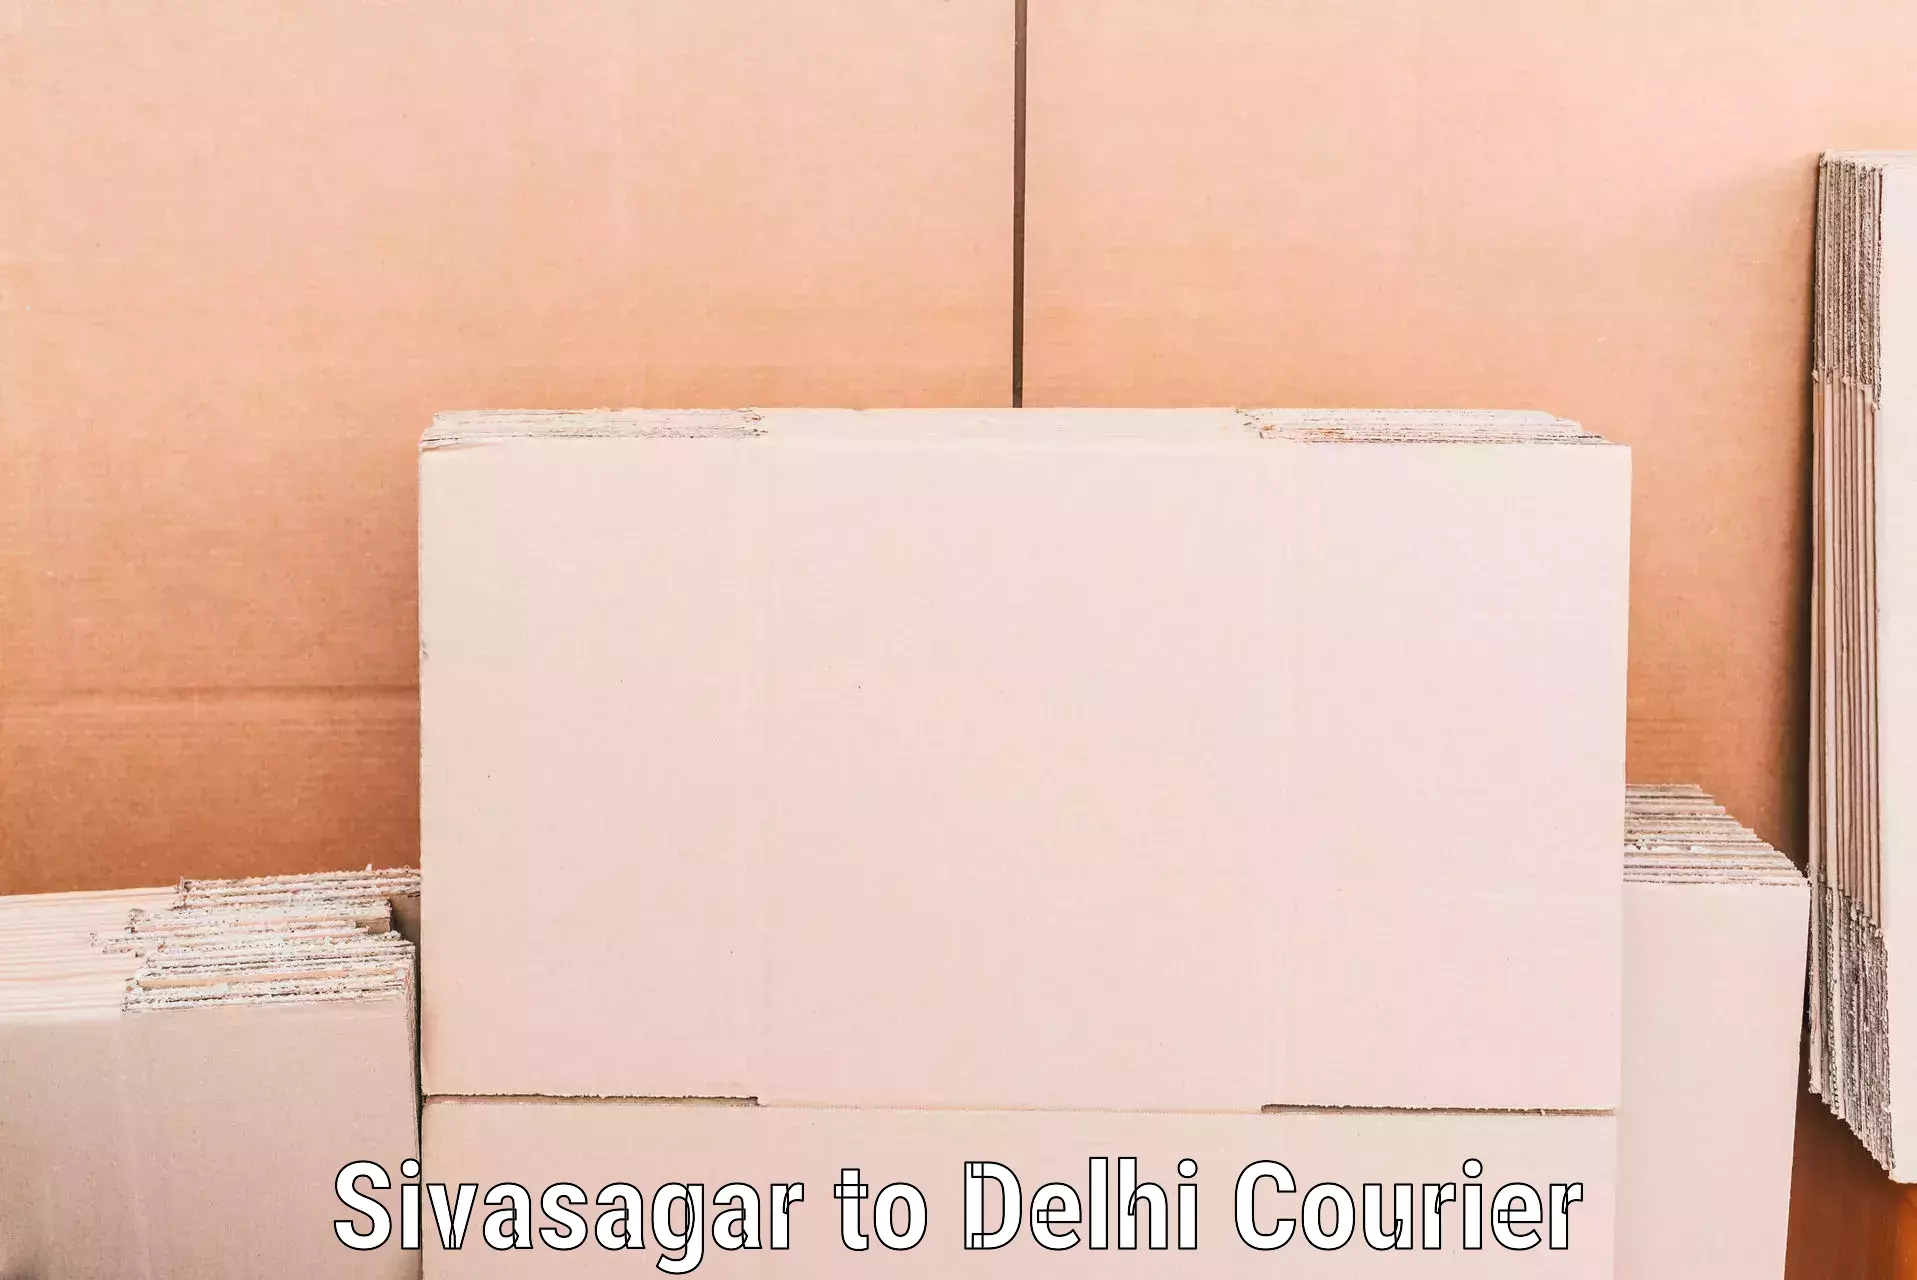 Full-service movers Sivasagar to Delhi